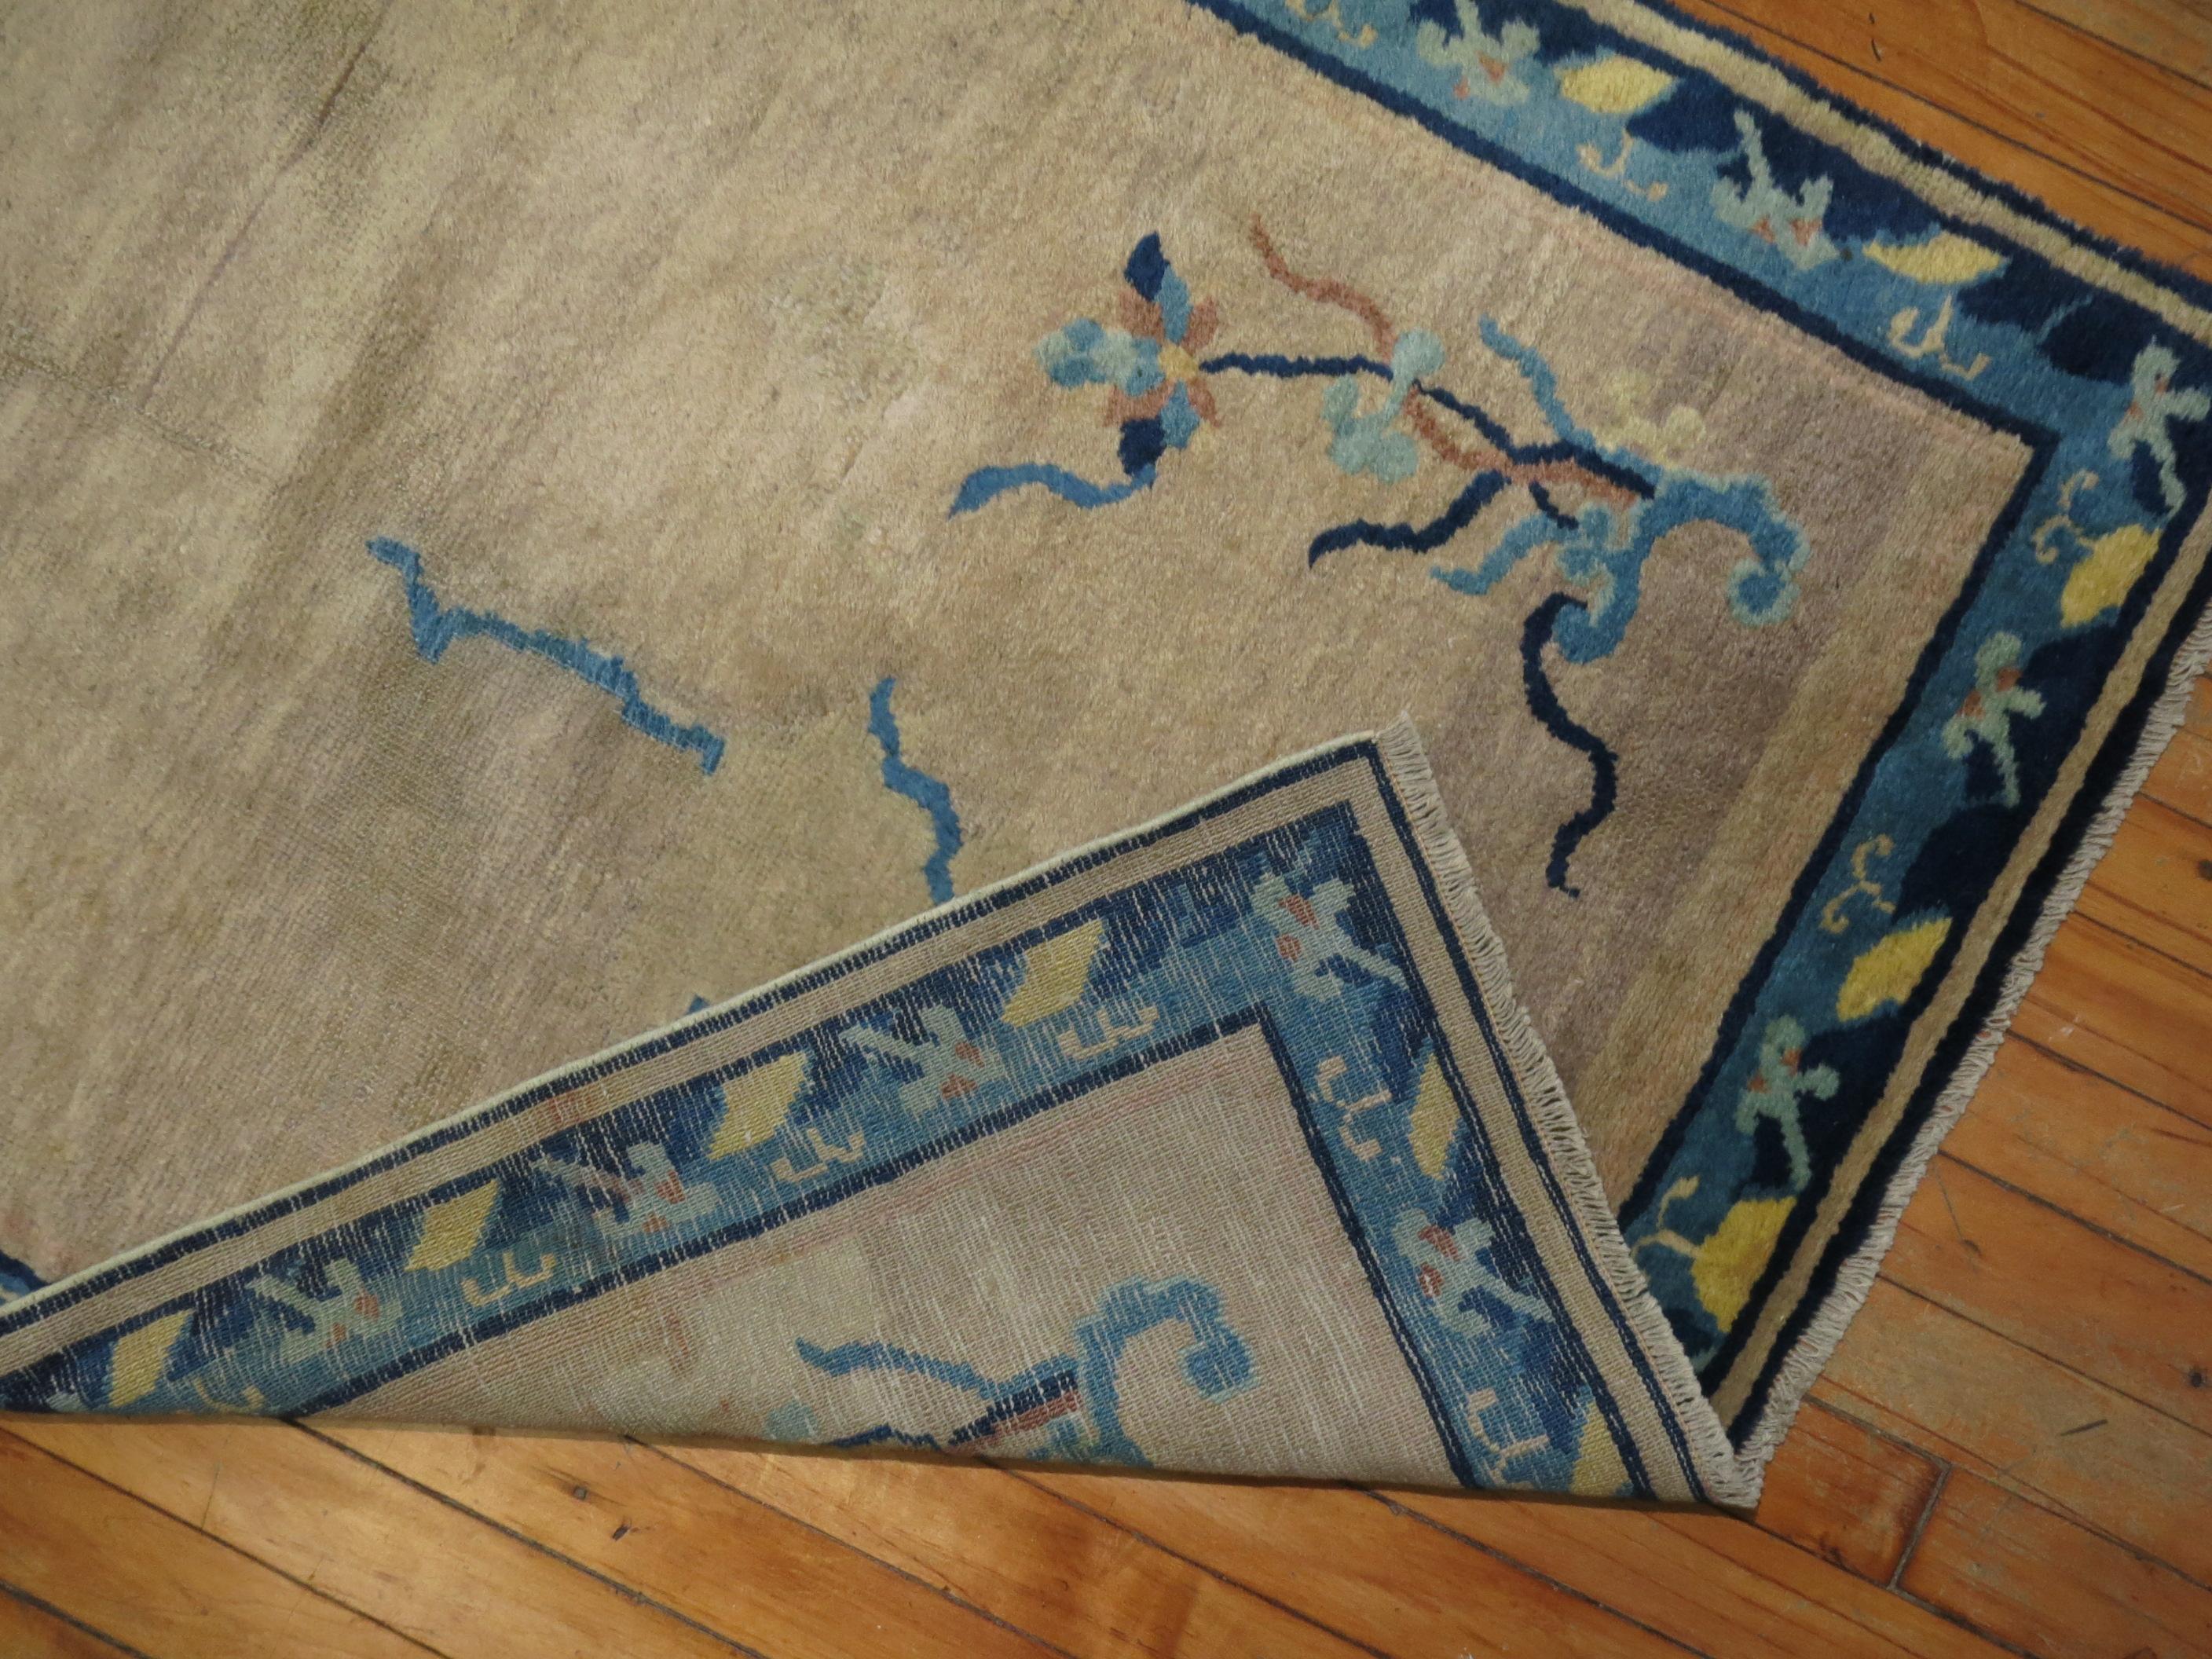 Long chemin de table chinois des années 1920 avec un motif solide à champ ouvert avec des motifs floraux en beige avec une belle bordure florale en bleu marine et bleu clair. Excellent état.

Mesures : 3' x 19'3